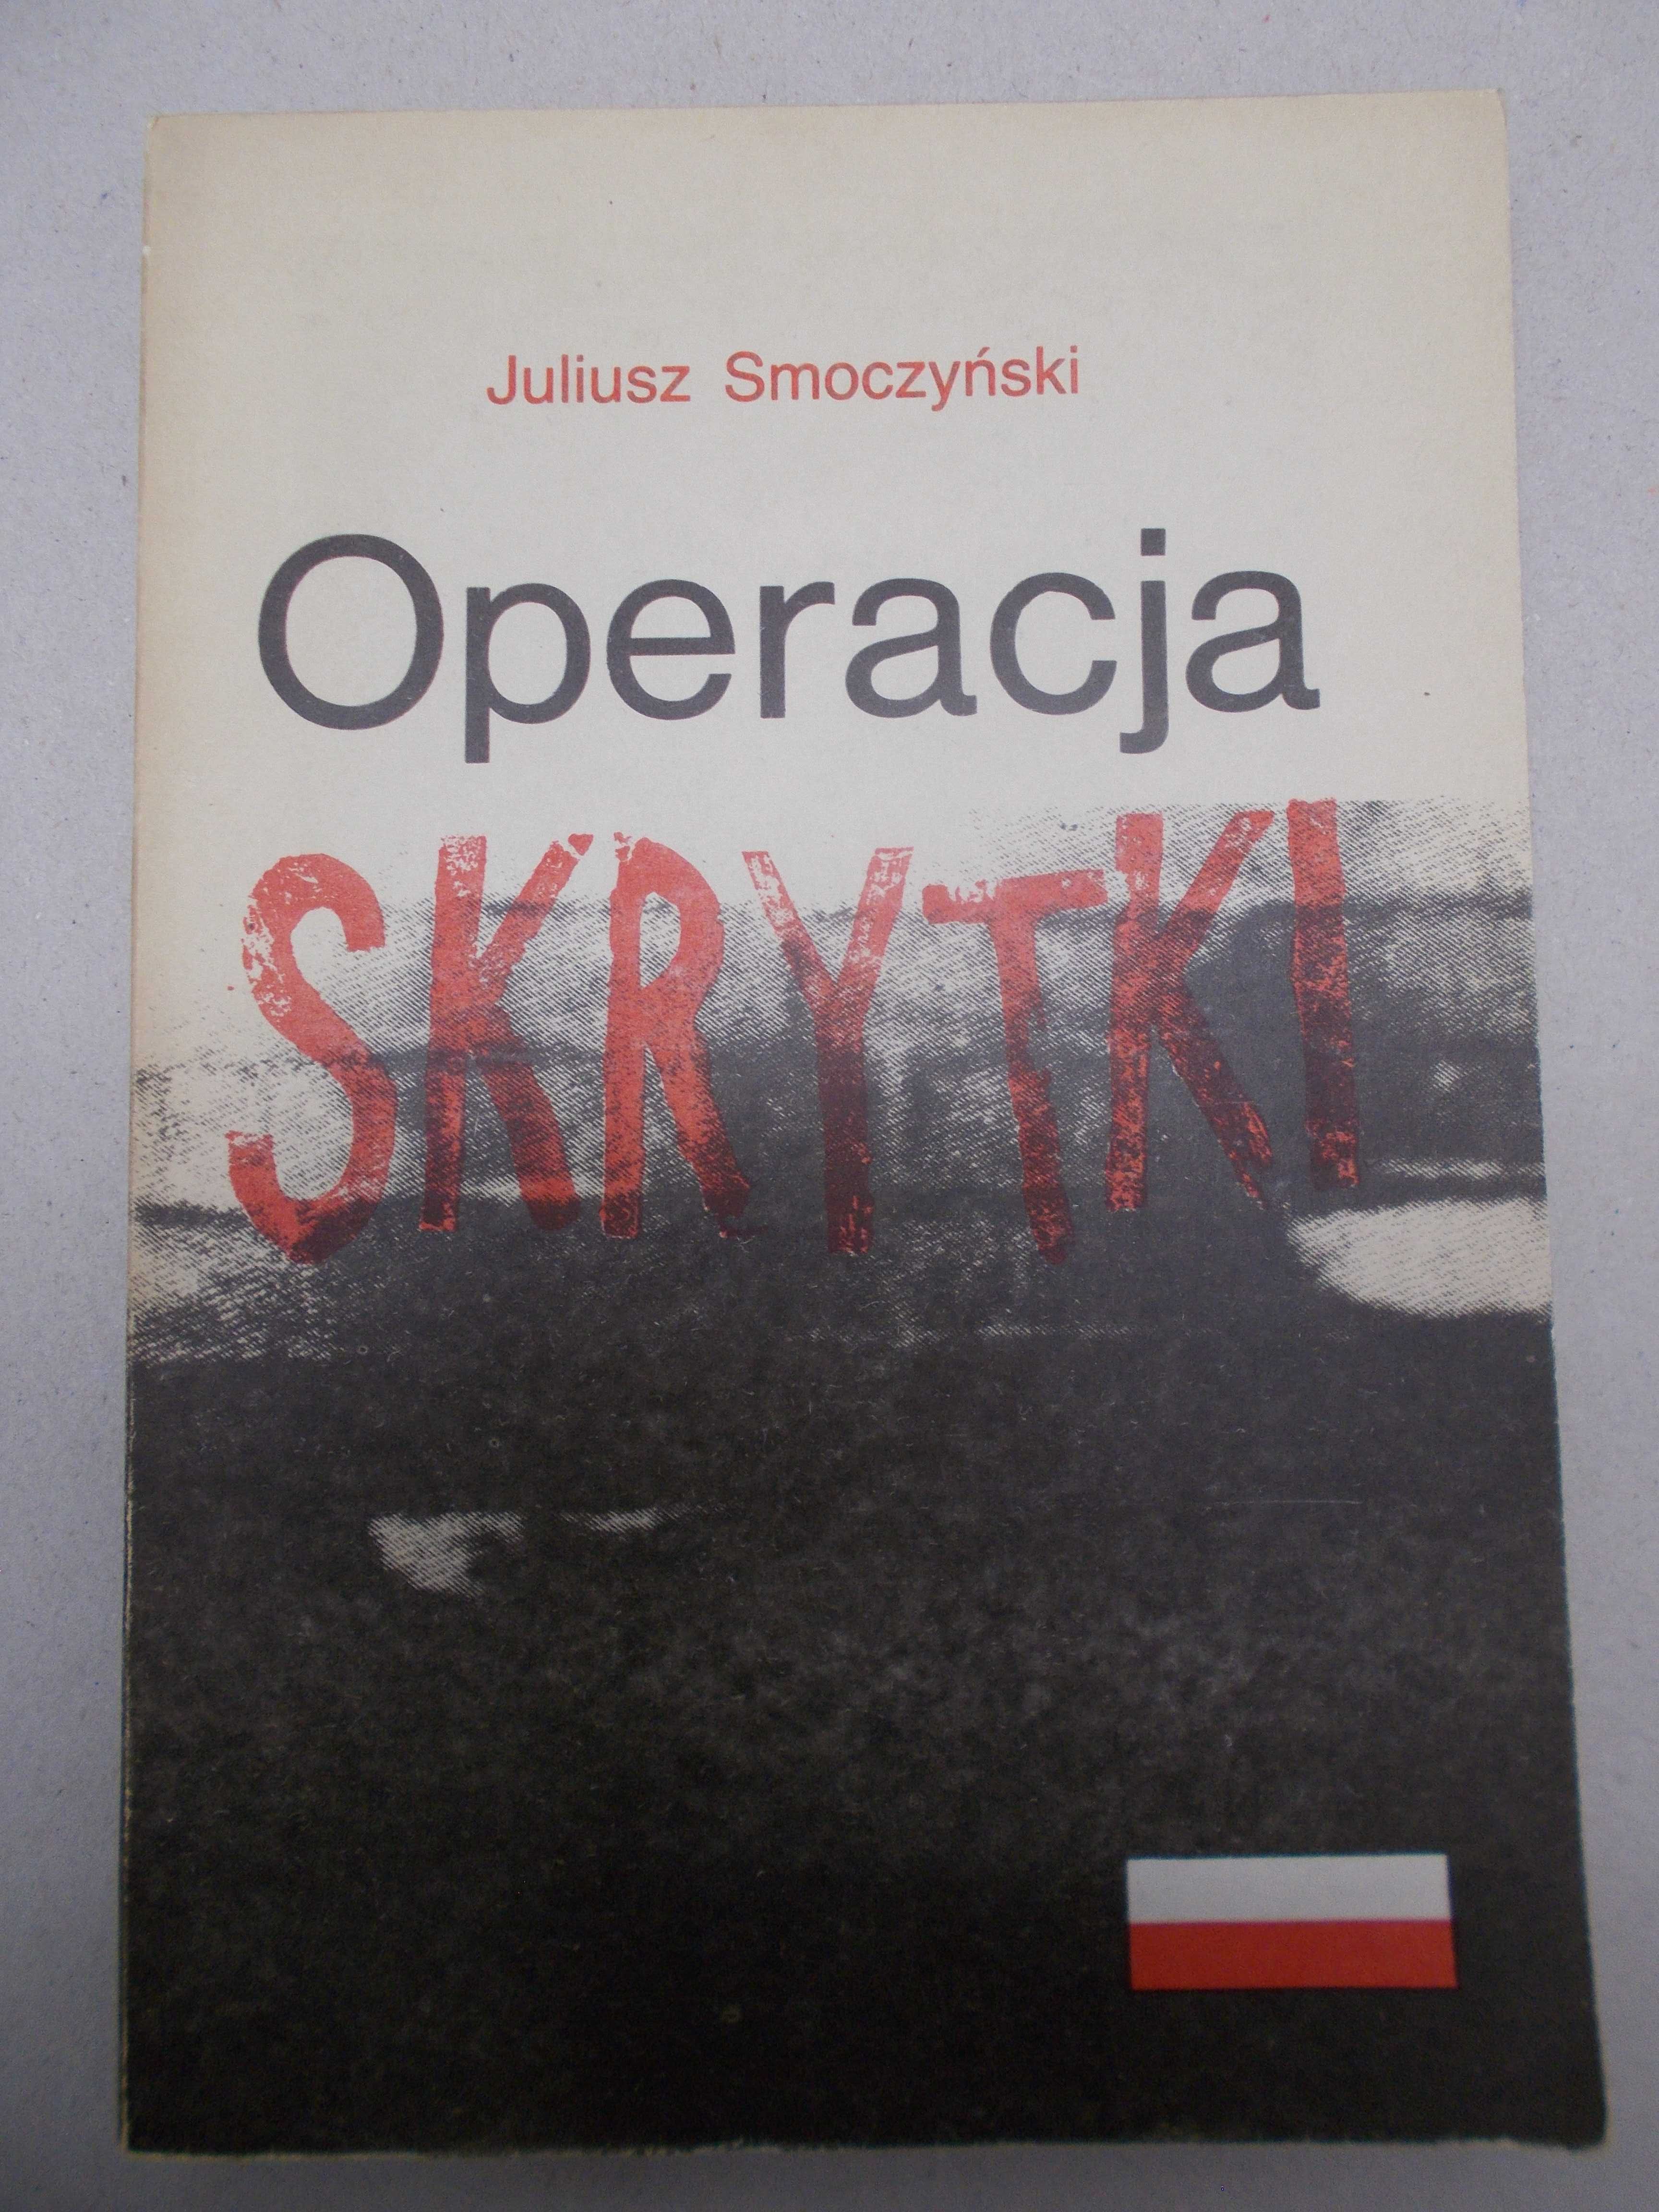 Juliusz Smoczyński - Operacja skrytki wojenne 1939 - 1945